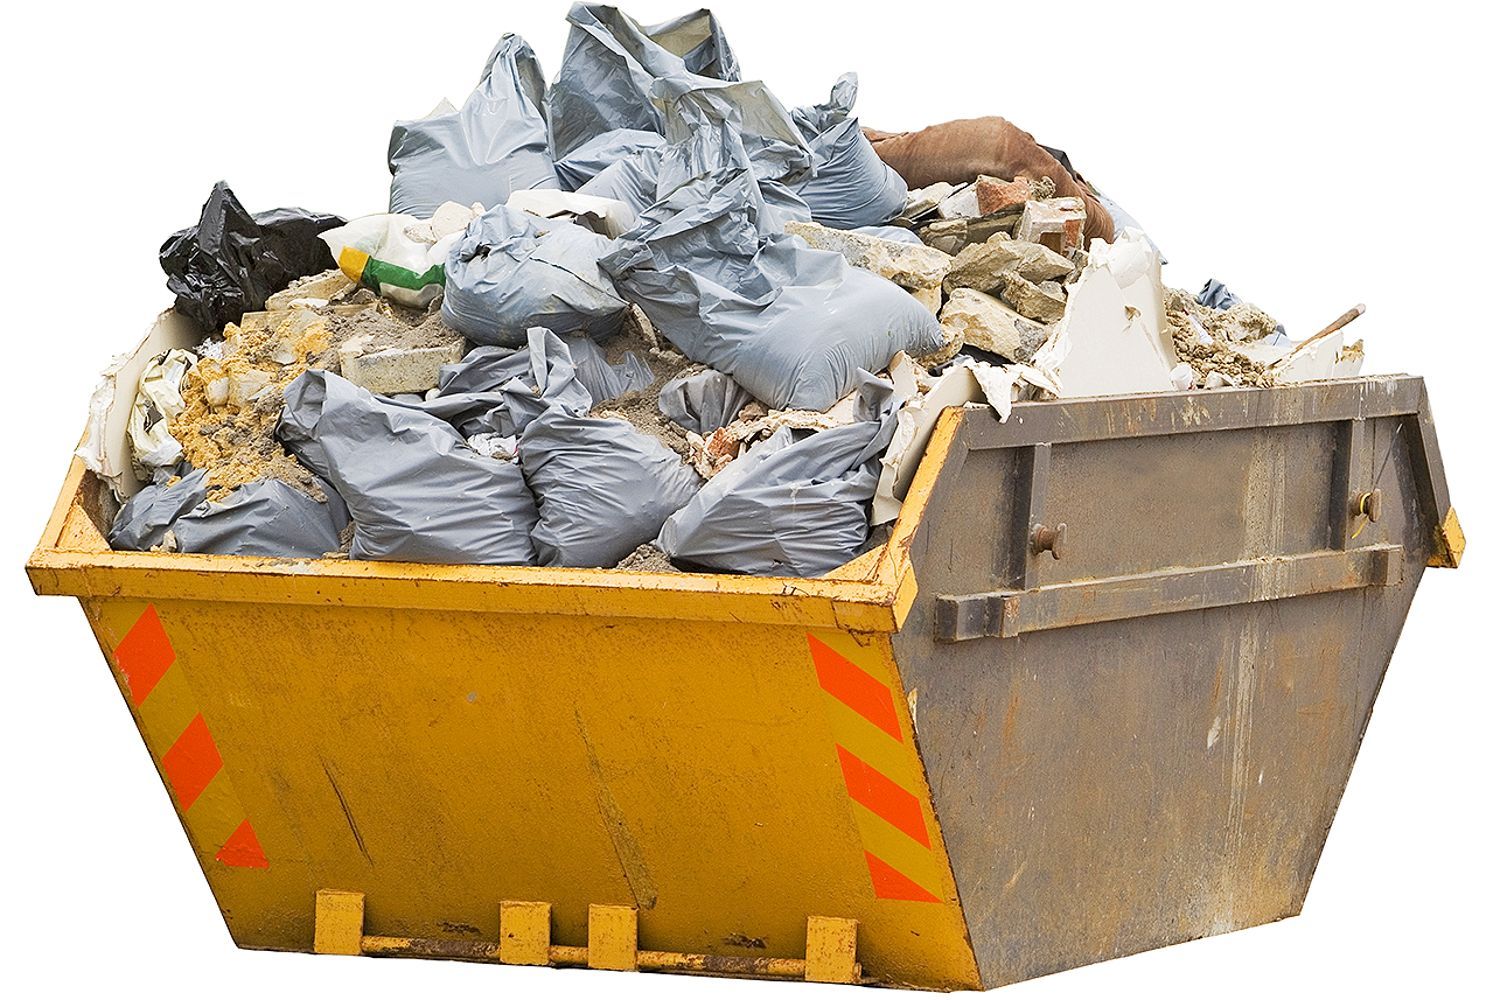 Как правильно утилизировать строительные отходы?